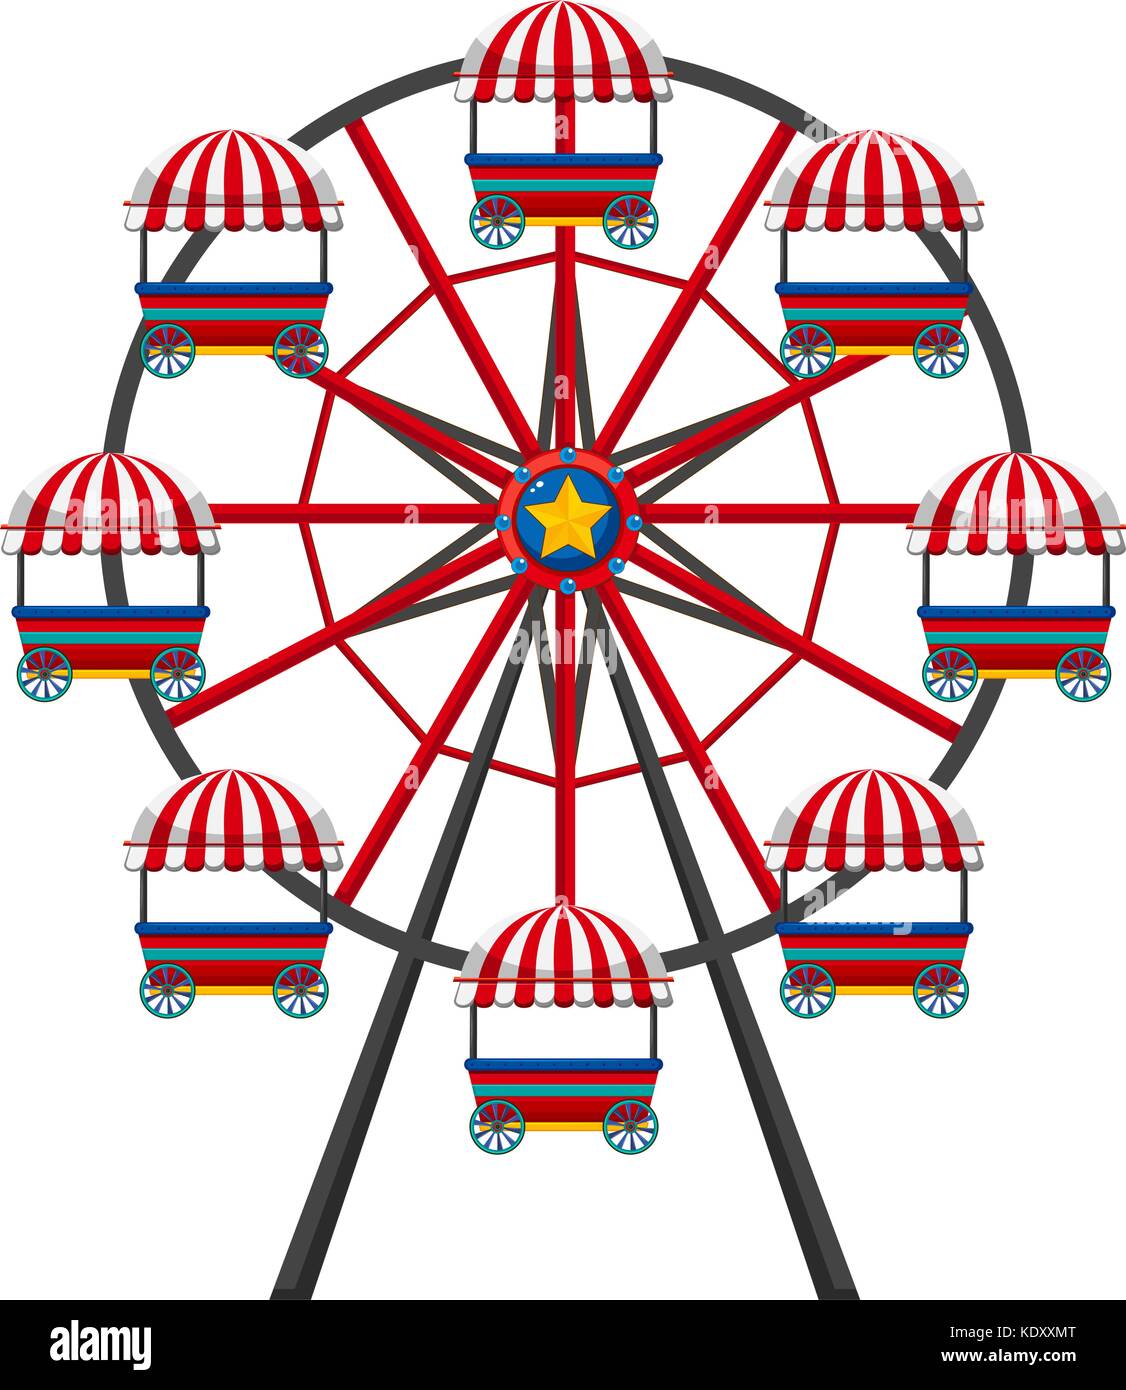 Ferris wheel on white background illustration Stock Vector